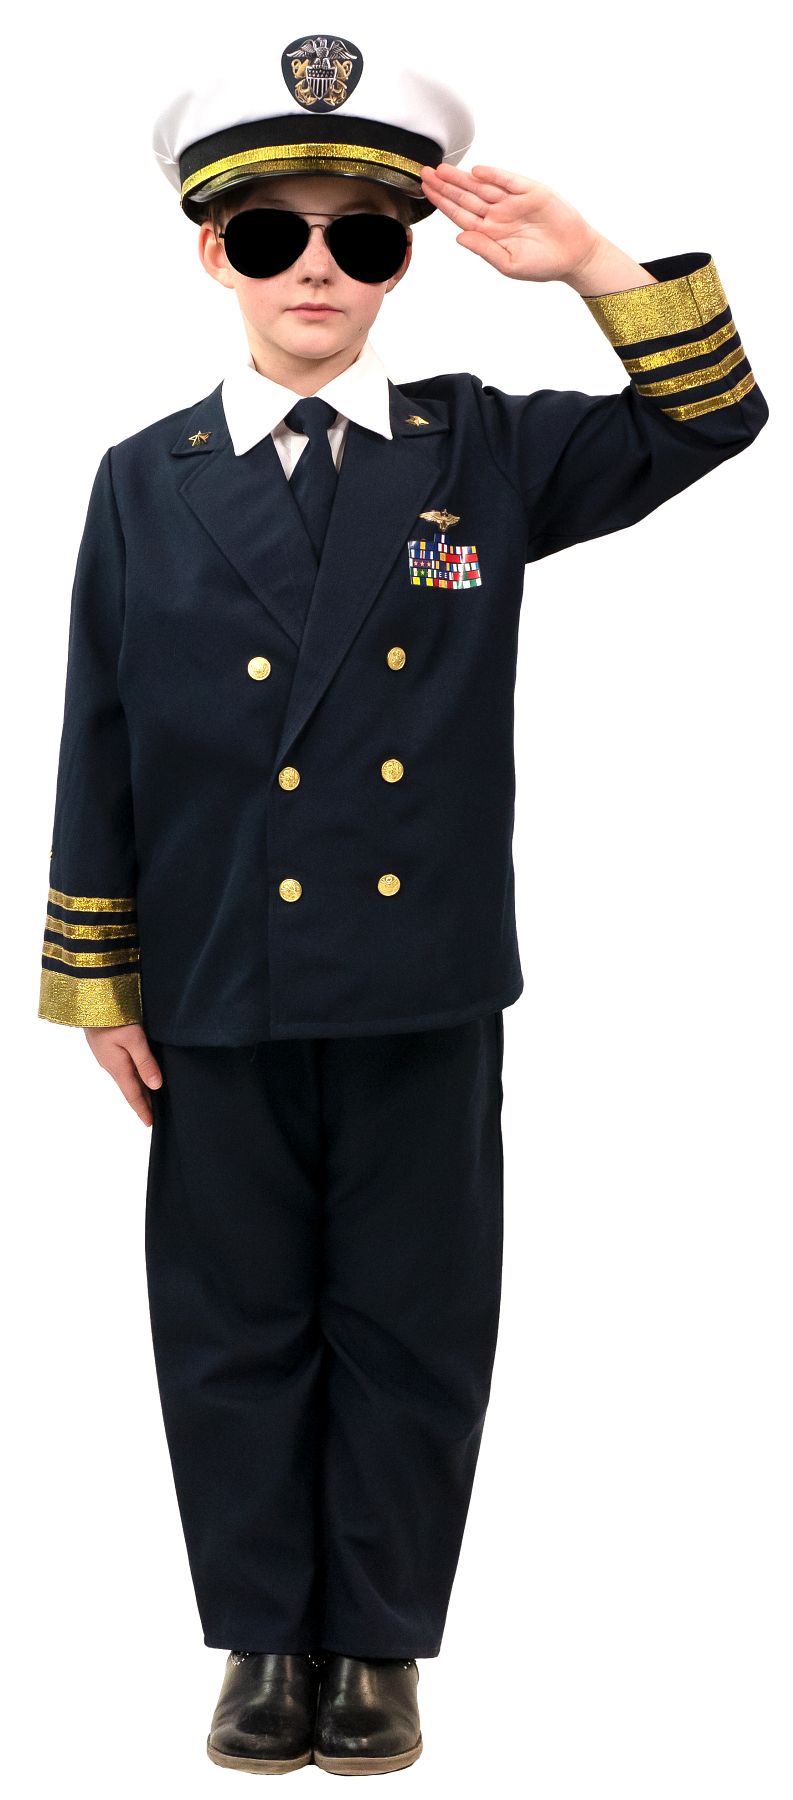 Officier de marine américain